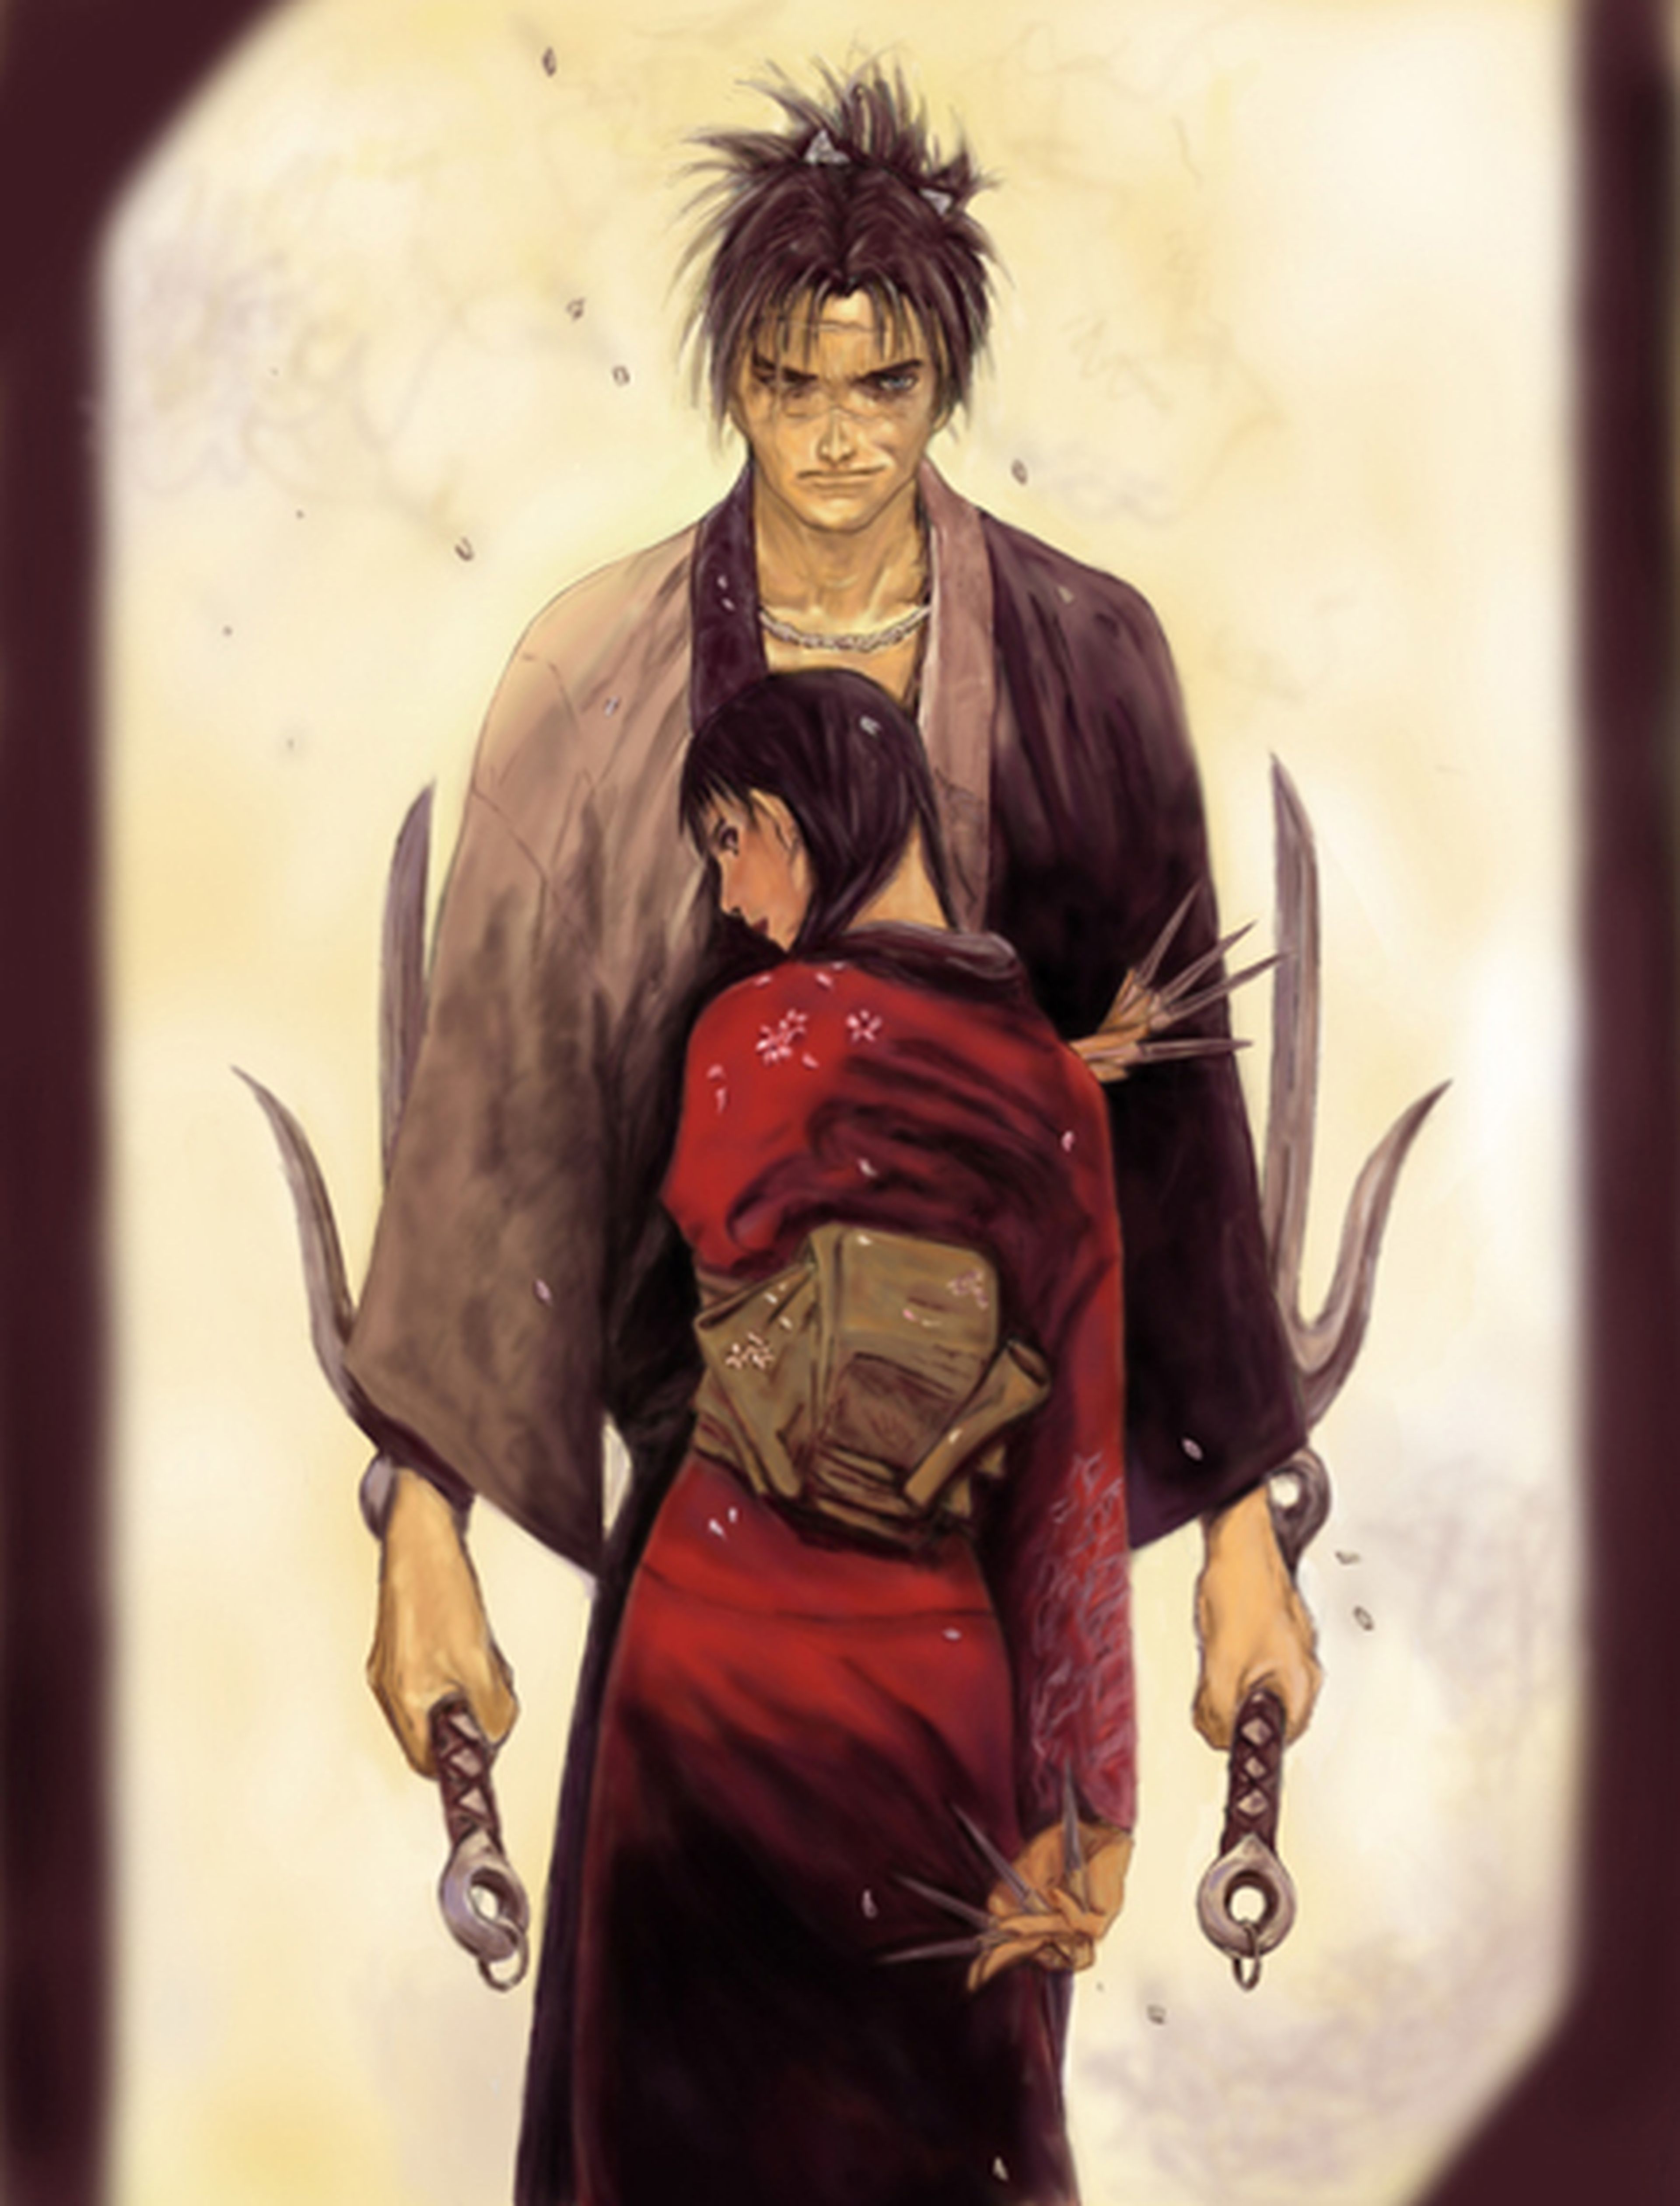 Anime: Series de samuráis